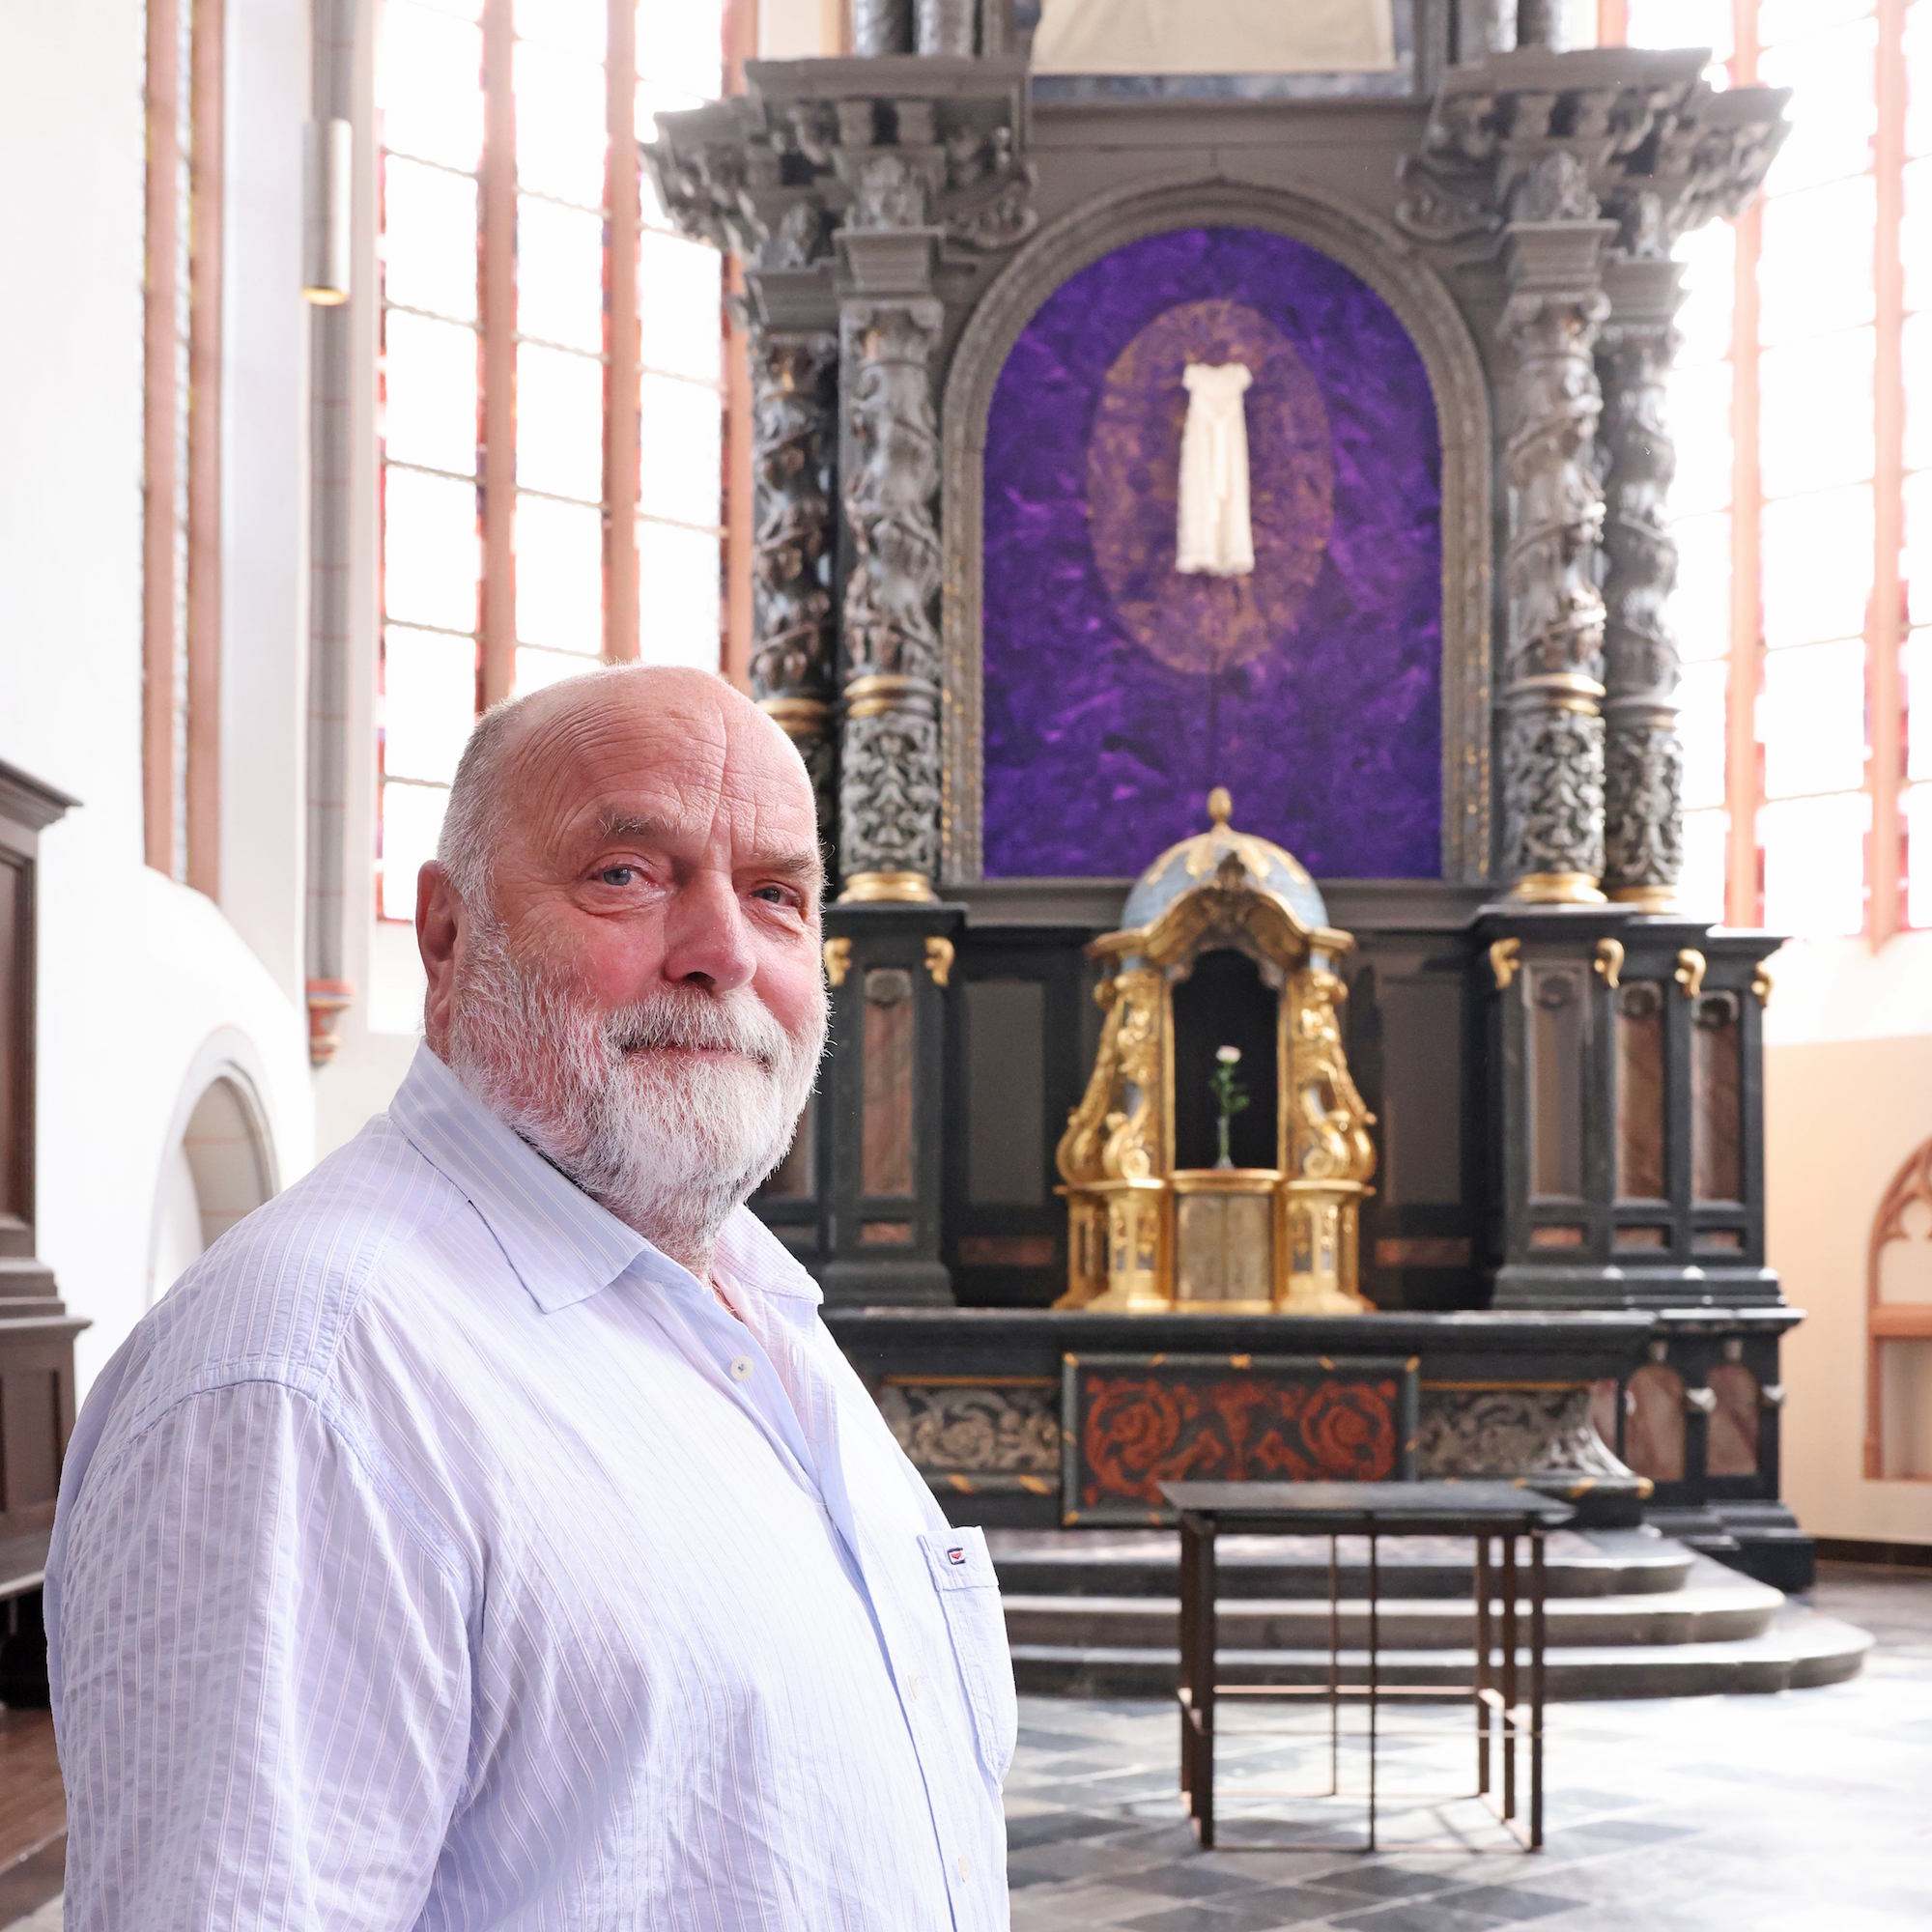 Uwe Appold vor seinem Kunstwerk in der Citykirche. (c) Domkapitel Aachen/Andreas Steindl